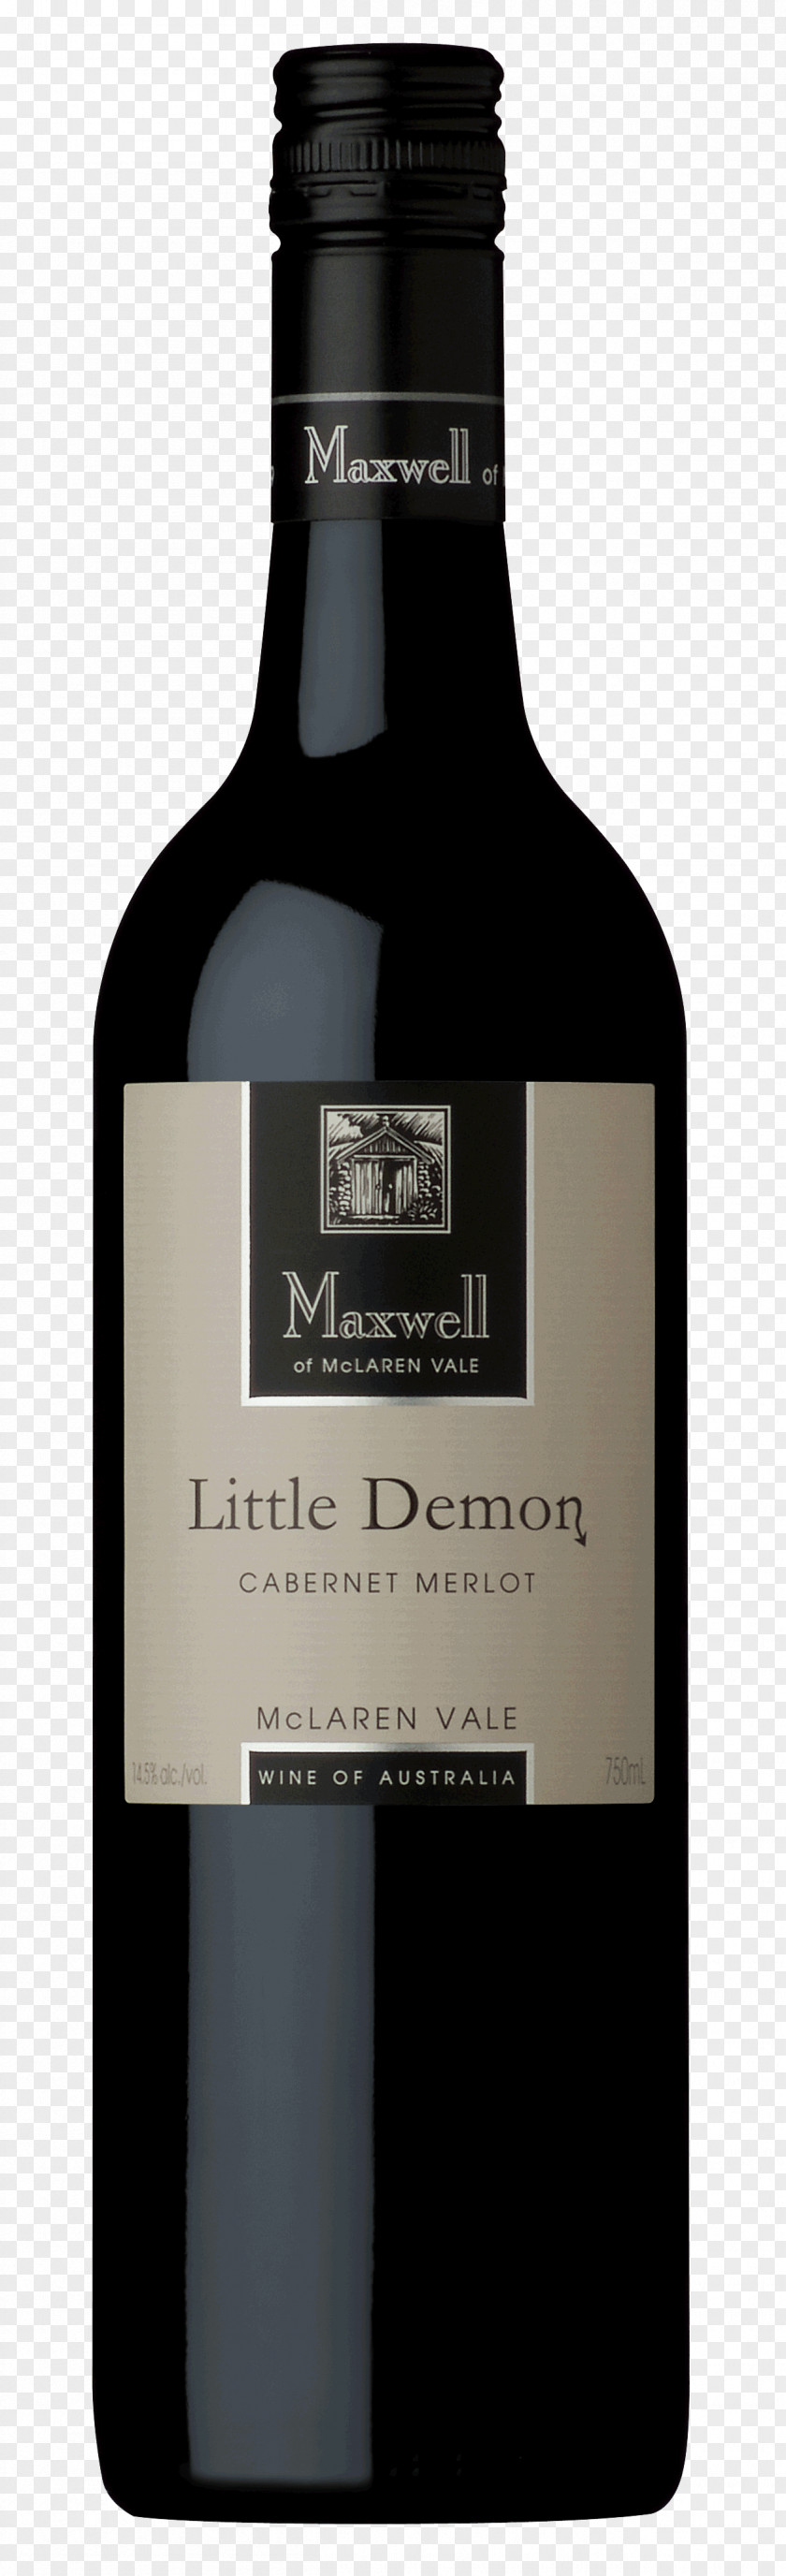 James Clerk Maxwell Brunello Di Montalcino DOCG Wine McLaren Vale Rosso PNG